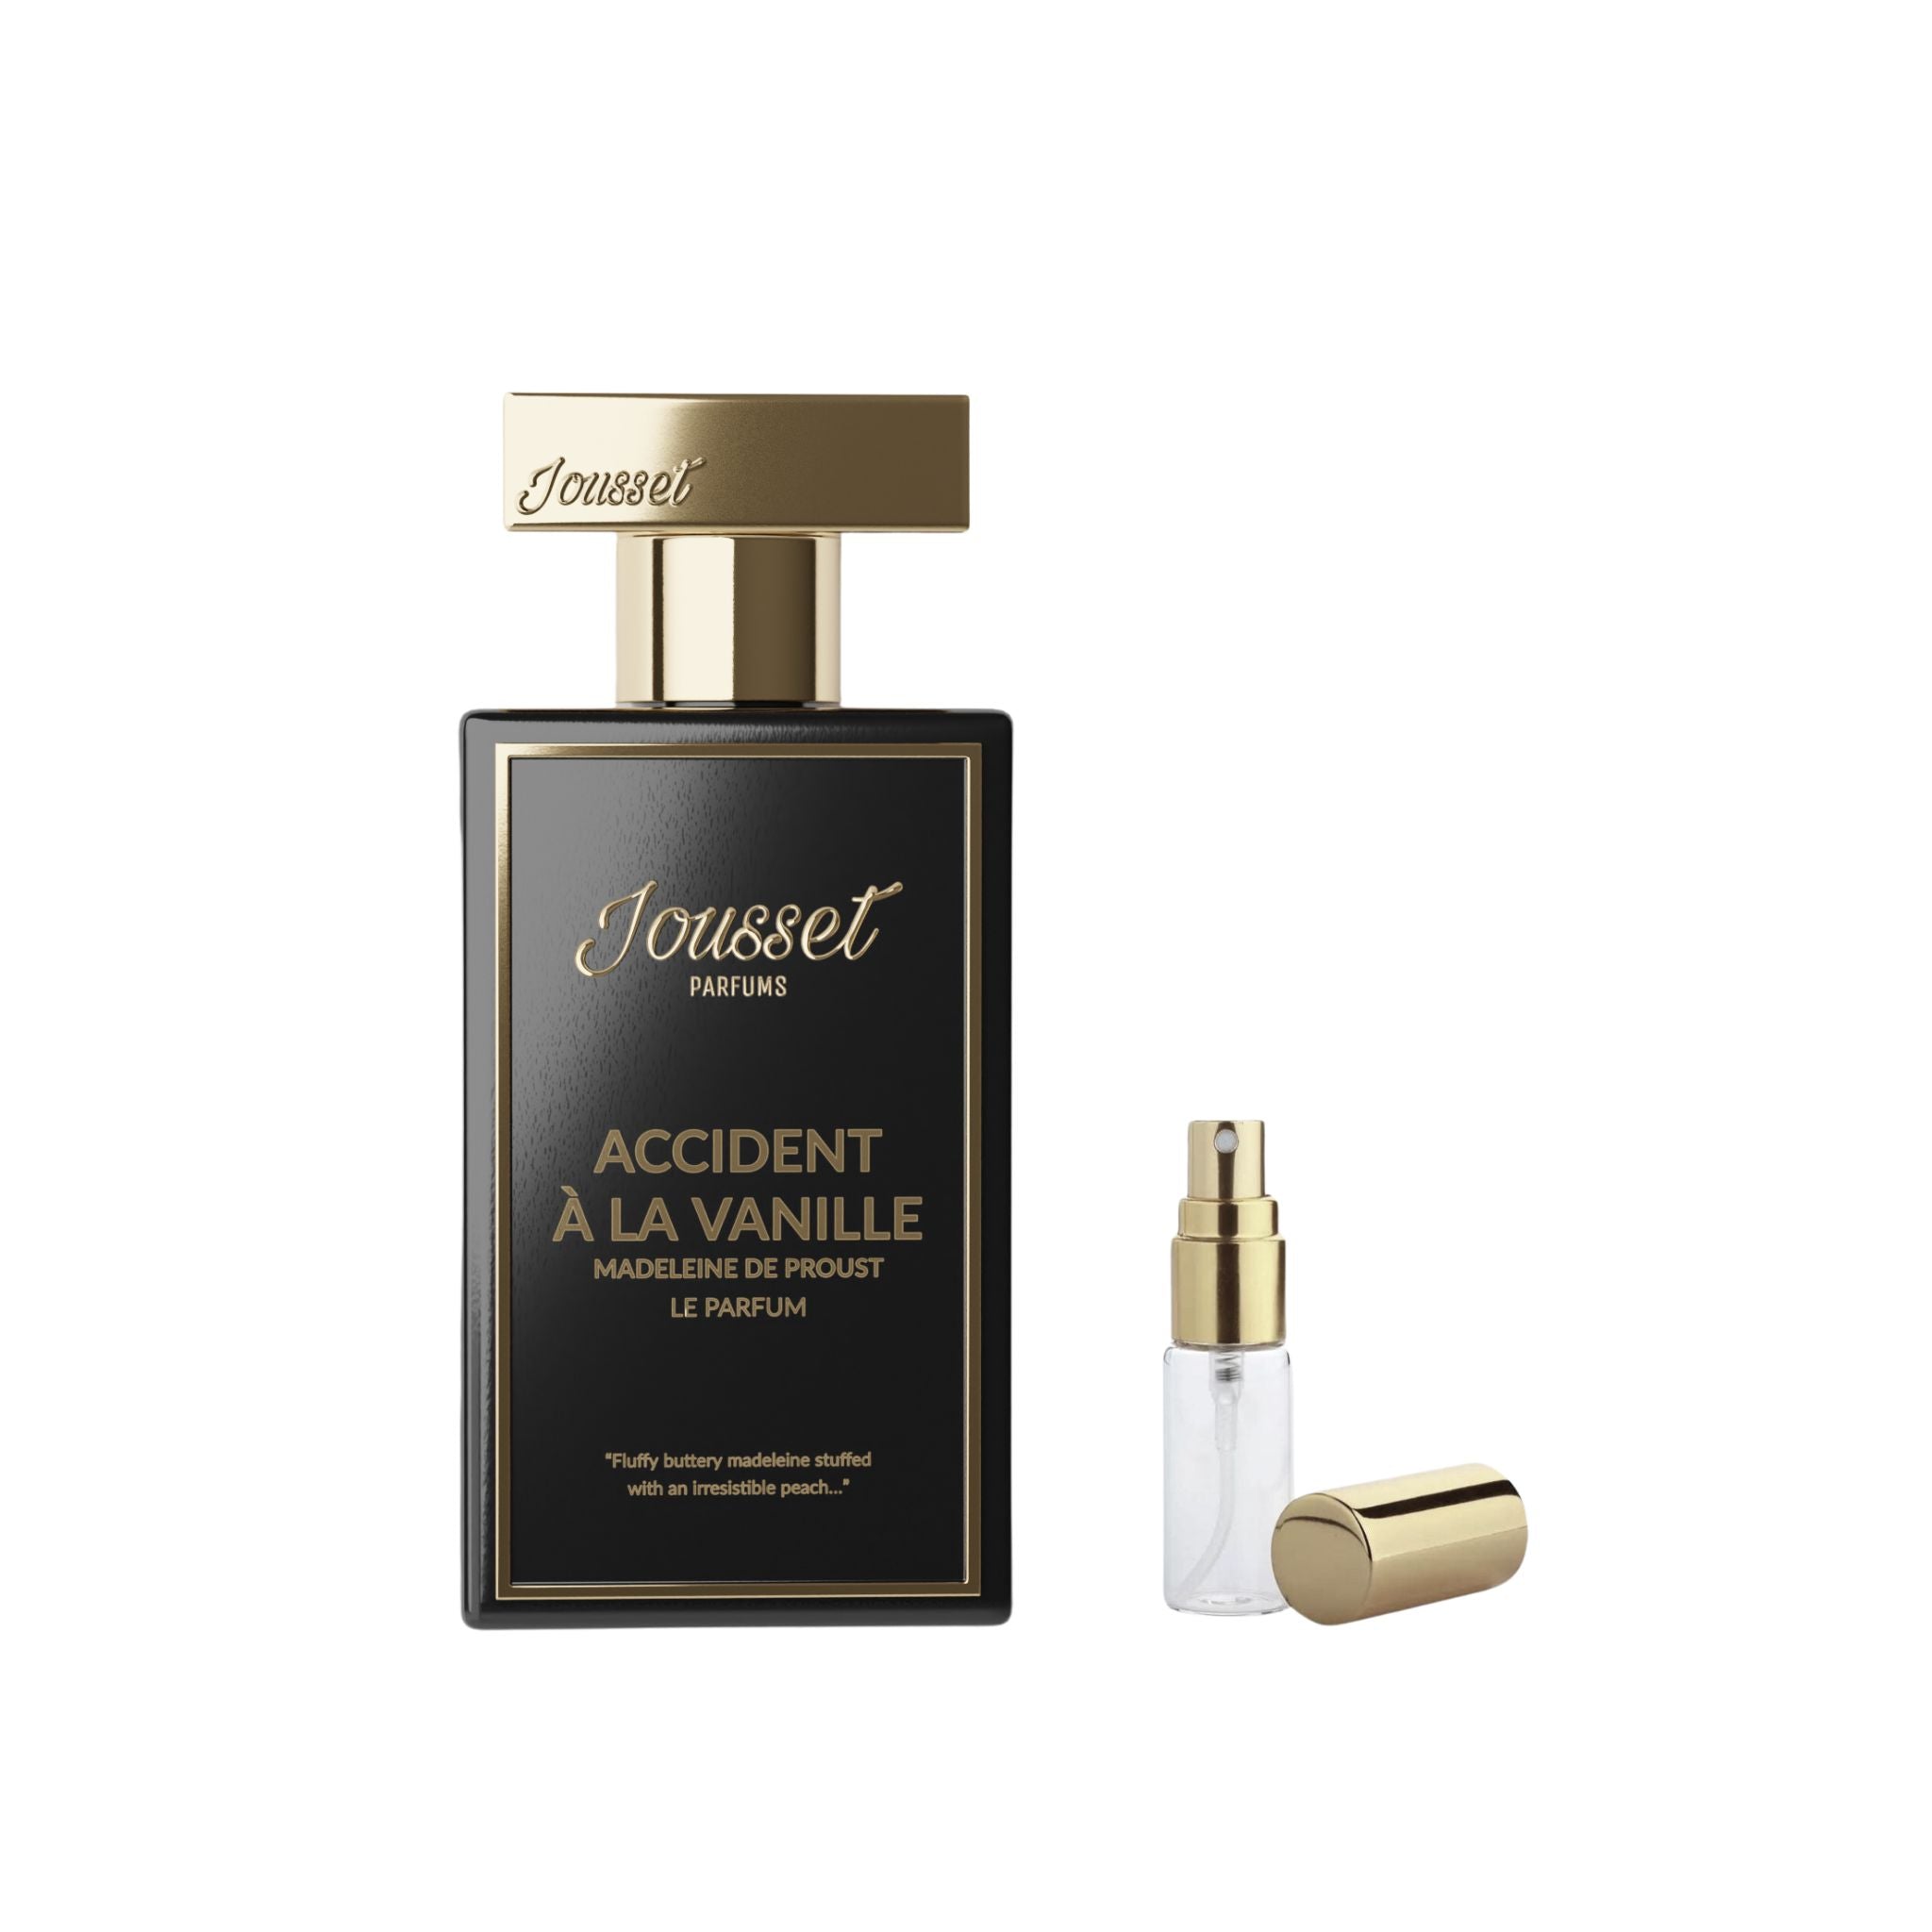 Accident A La anille Madeleine de Proust Jousset Parfums Sample Size